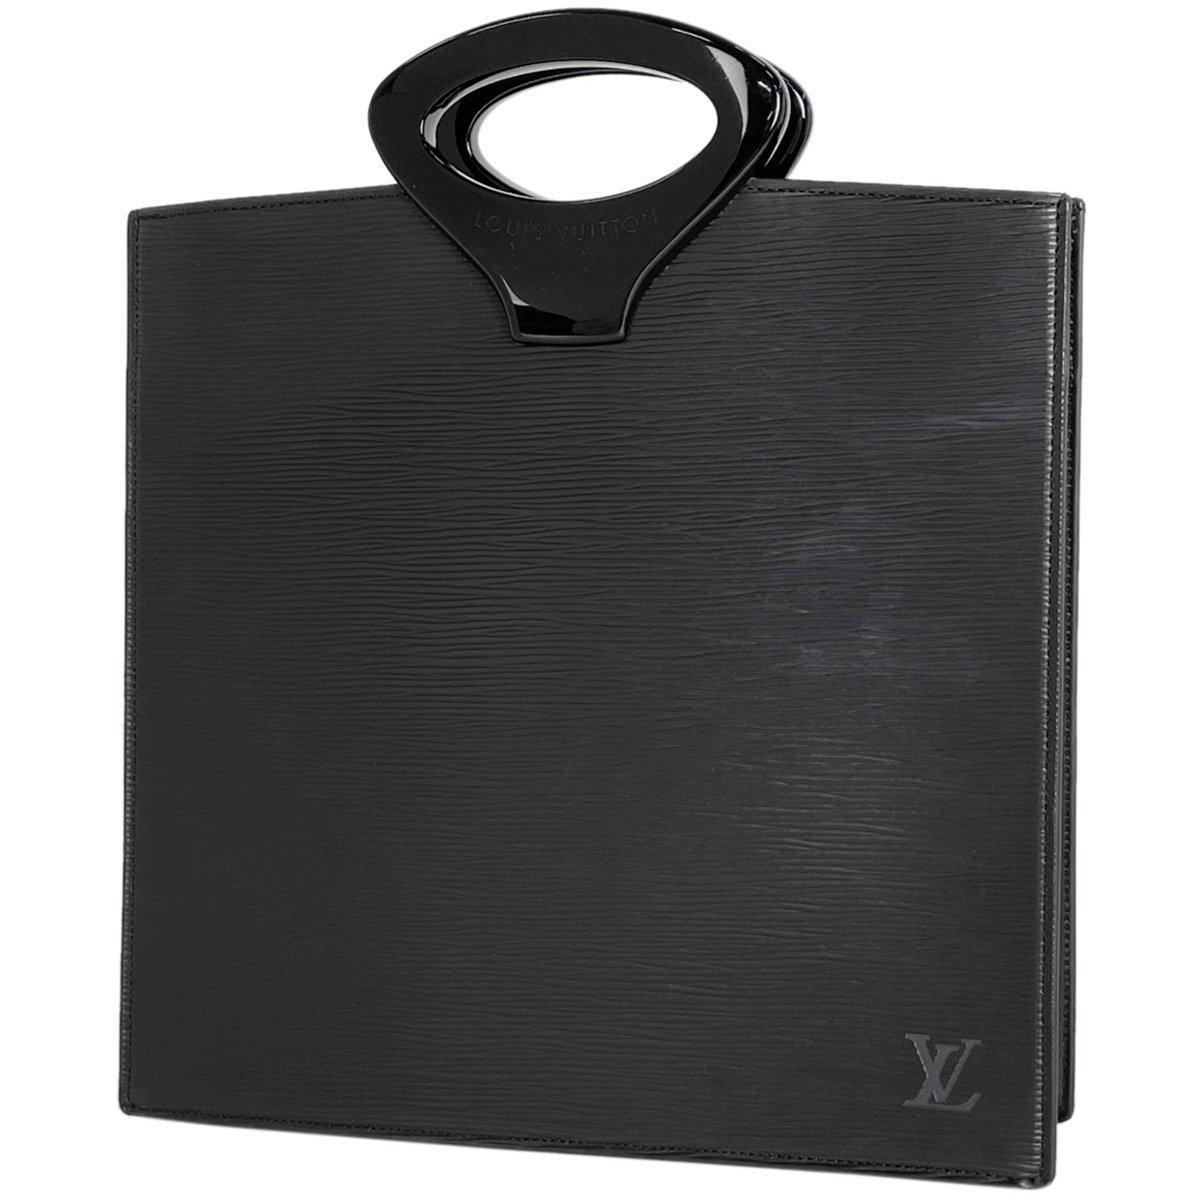 ルイ・ヴィトン Louis Vuitton オンブル 手提げ ハンドバッグ エピ ブラック M52102 レディース 【中古】